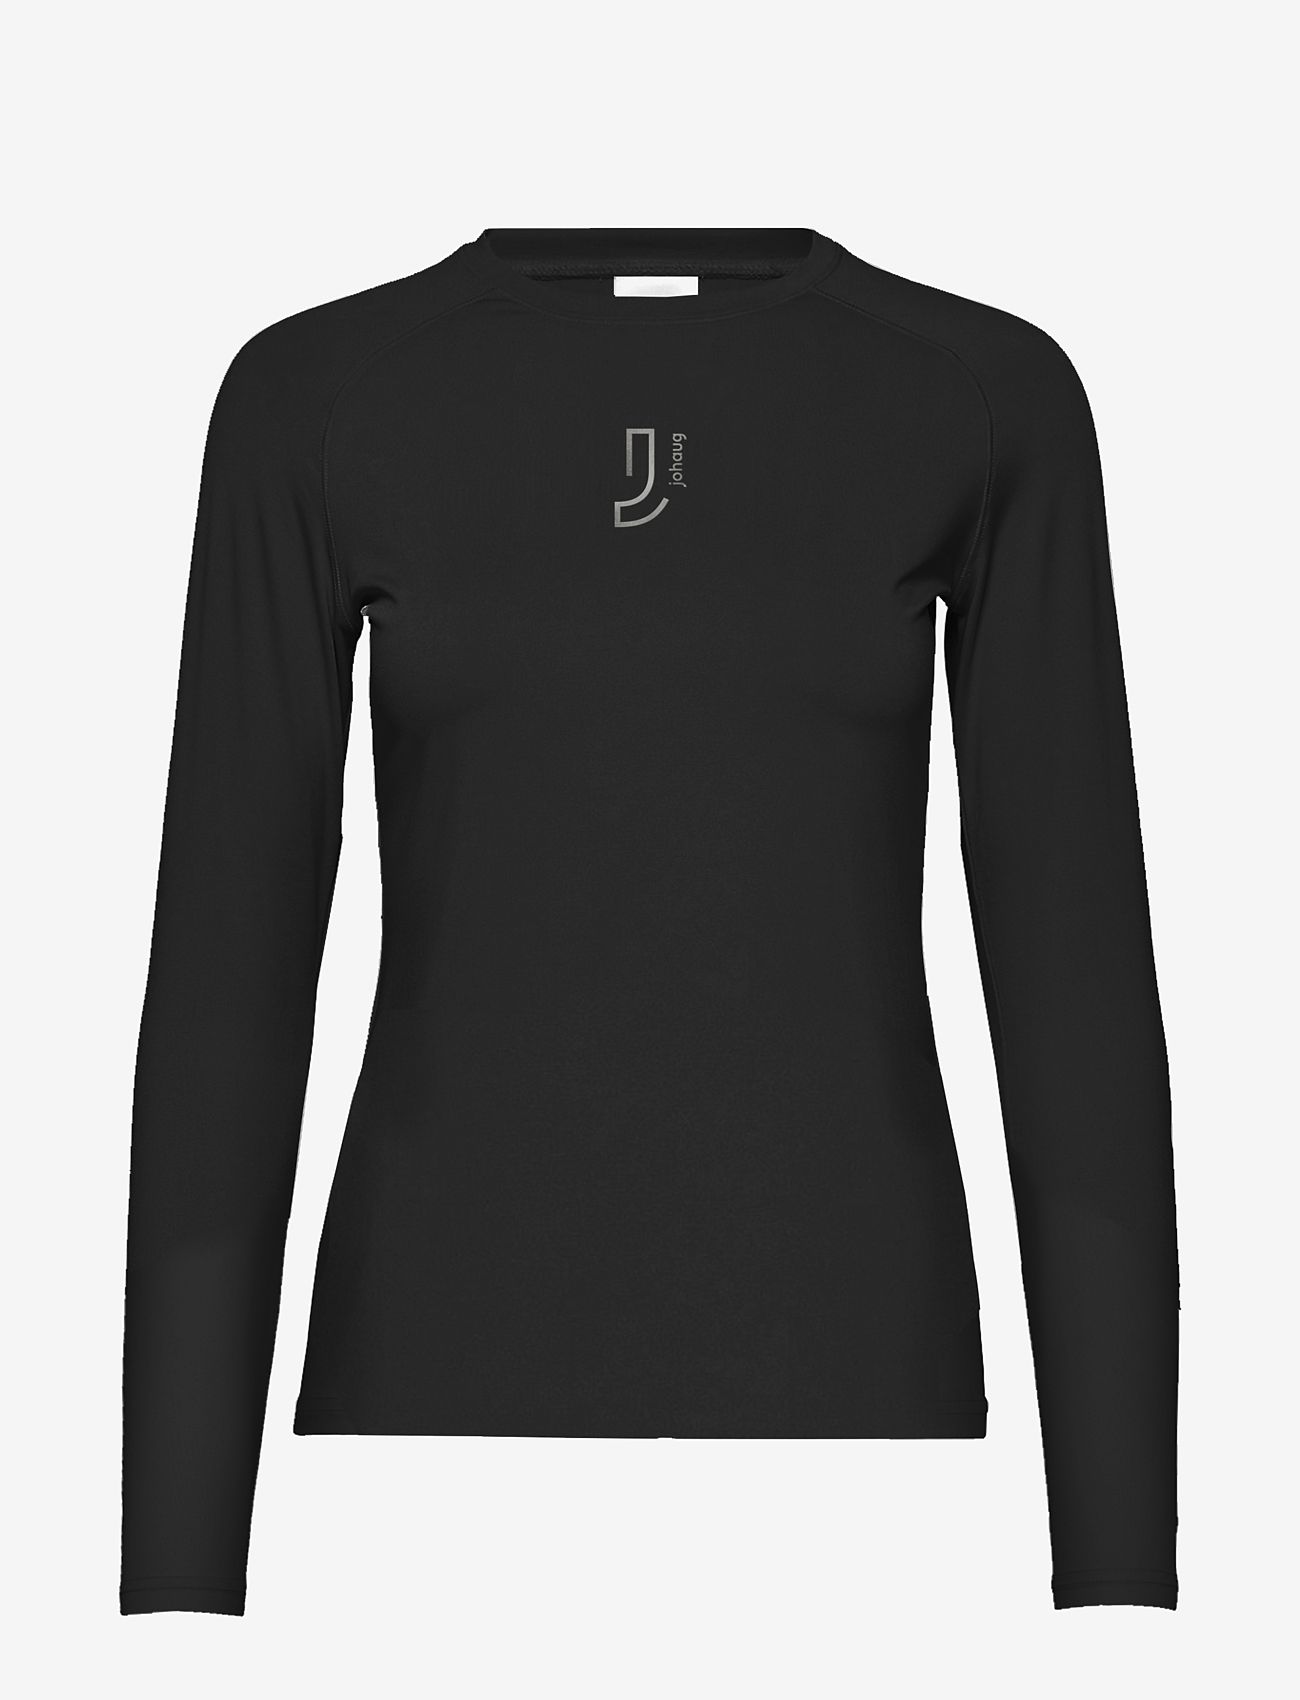 Johaug - Elemental Long Sleeve 2.0 - långärmade tröjor - black - 0